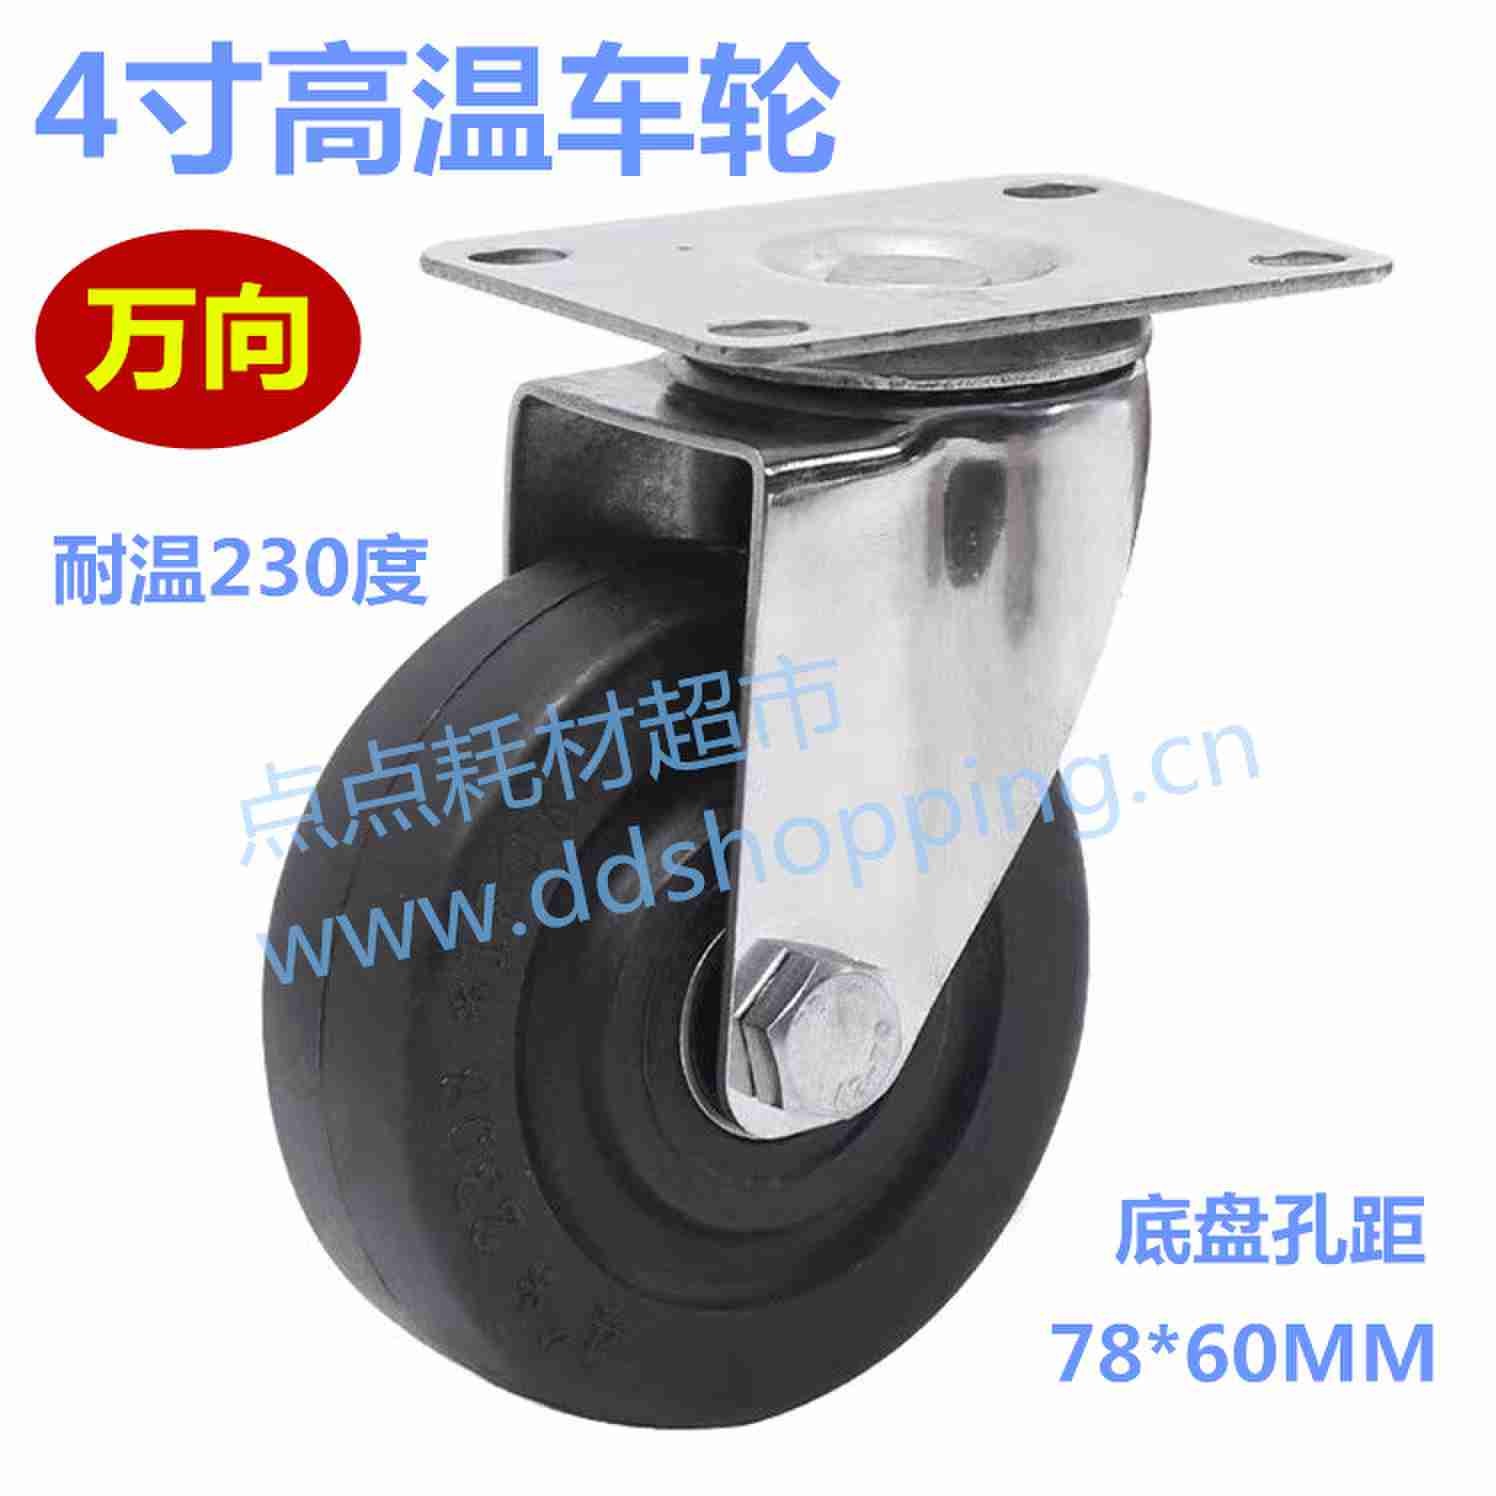 4寸高温橡胶车轮 脚轮 耐温230度 中型/底板孔距78*60